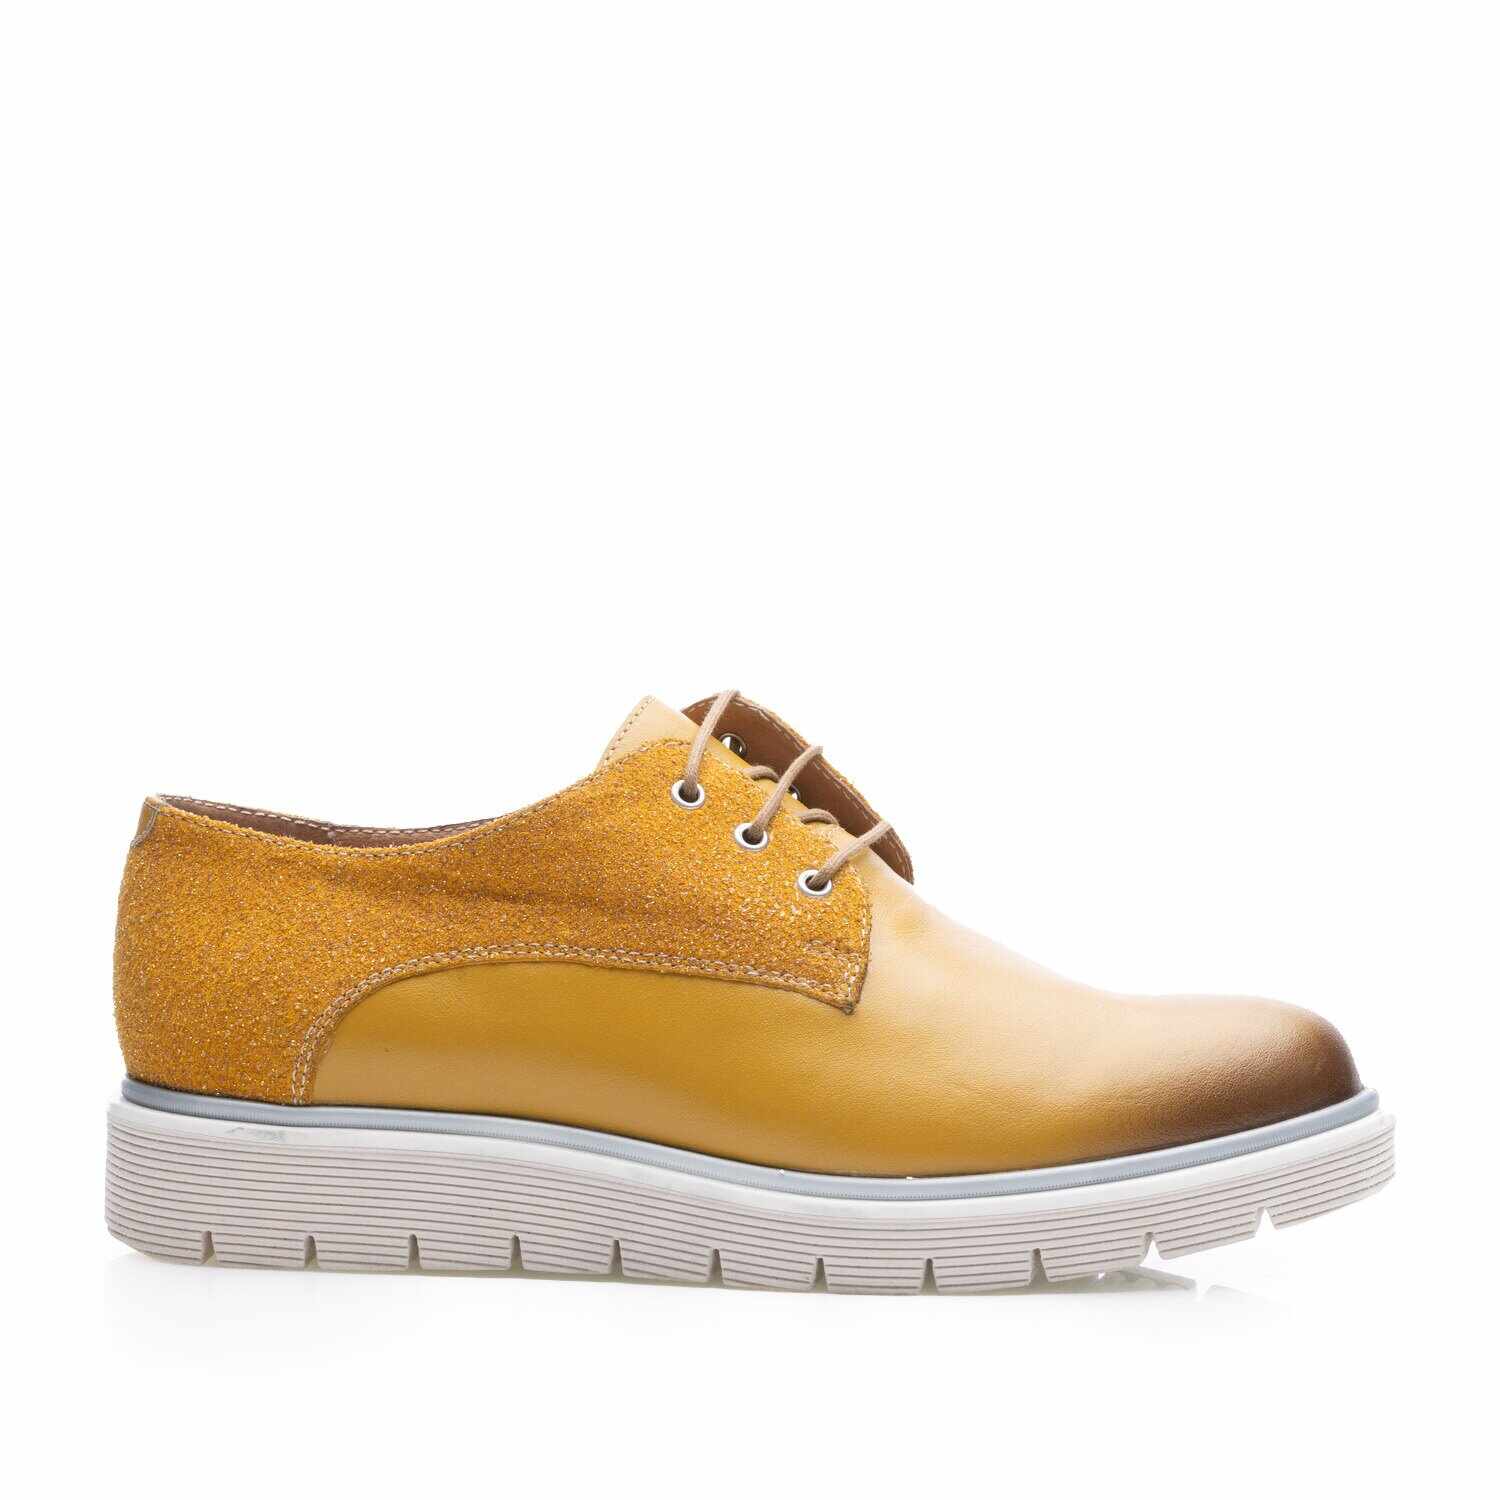 Pantofi casual damă din piele naturală,Leofex - 312 Galben Sclipici Box